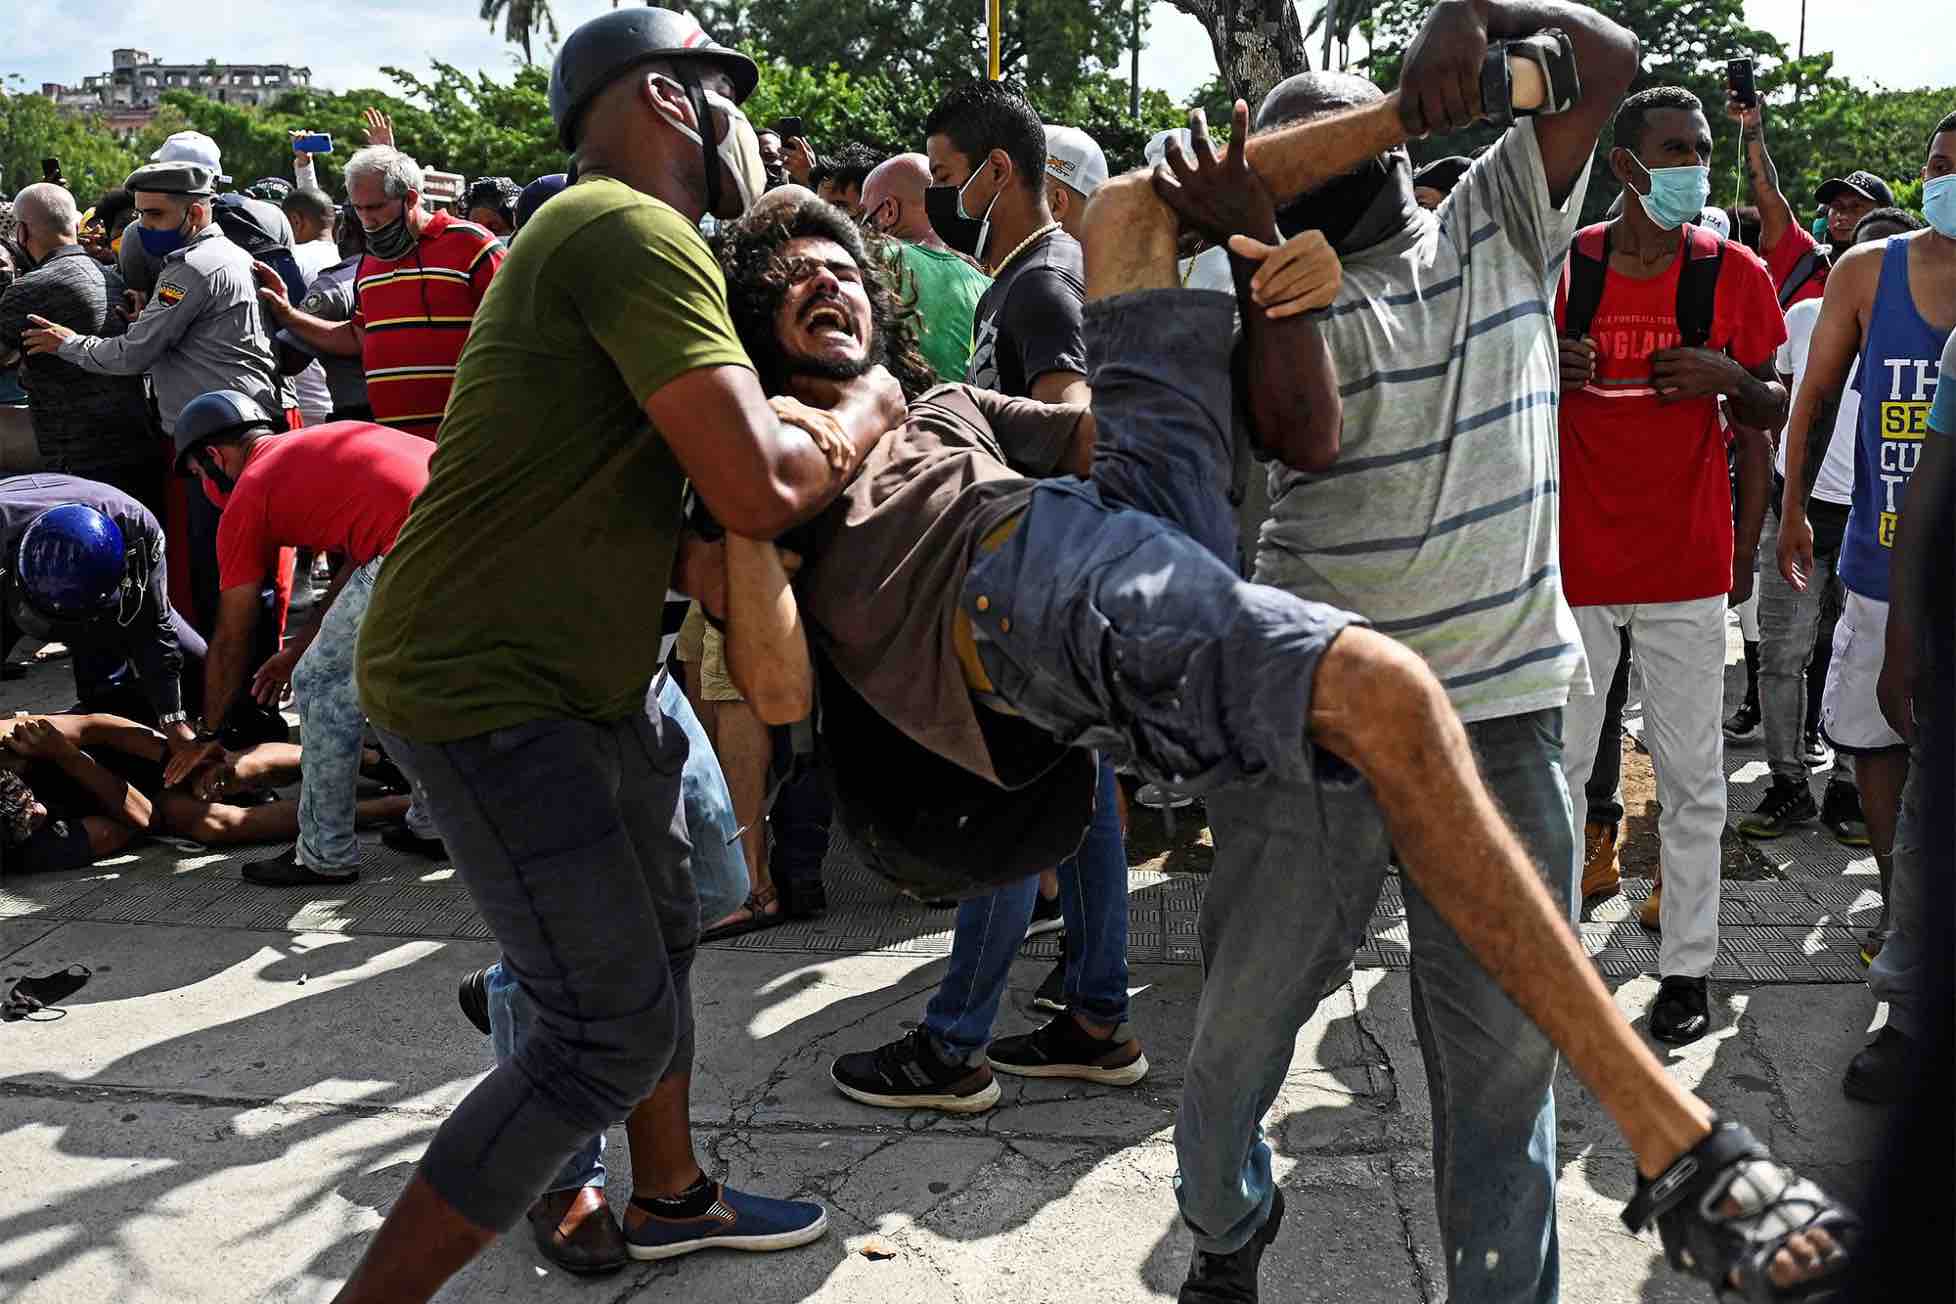 Un homme est arrêté lors d'une manifestation contre le gouvernement du président cubain Miguel Diaz-Canel à La Havane le 11 juillet 2021. -- AFP via Getty Images